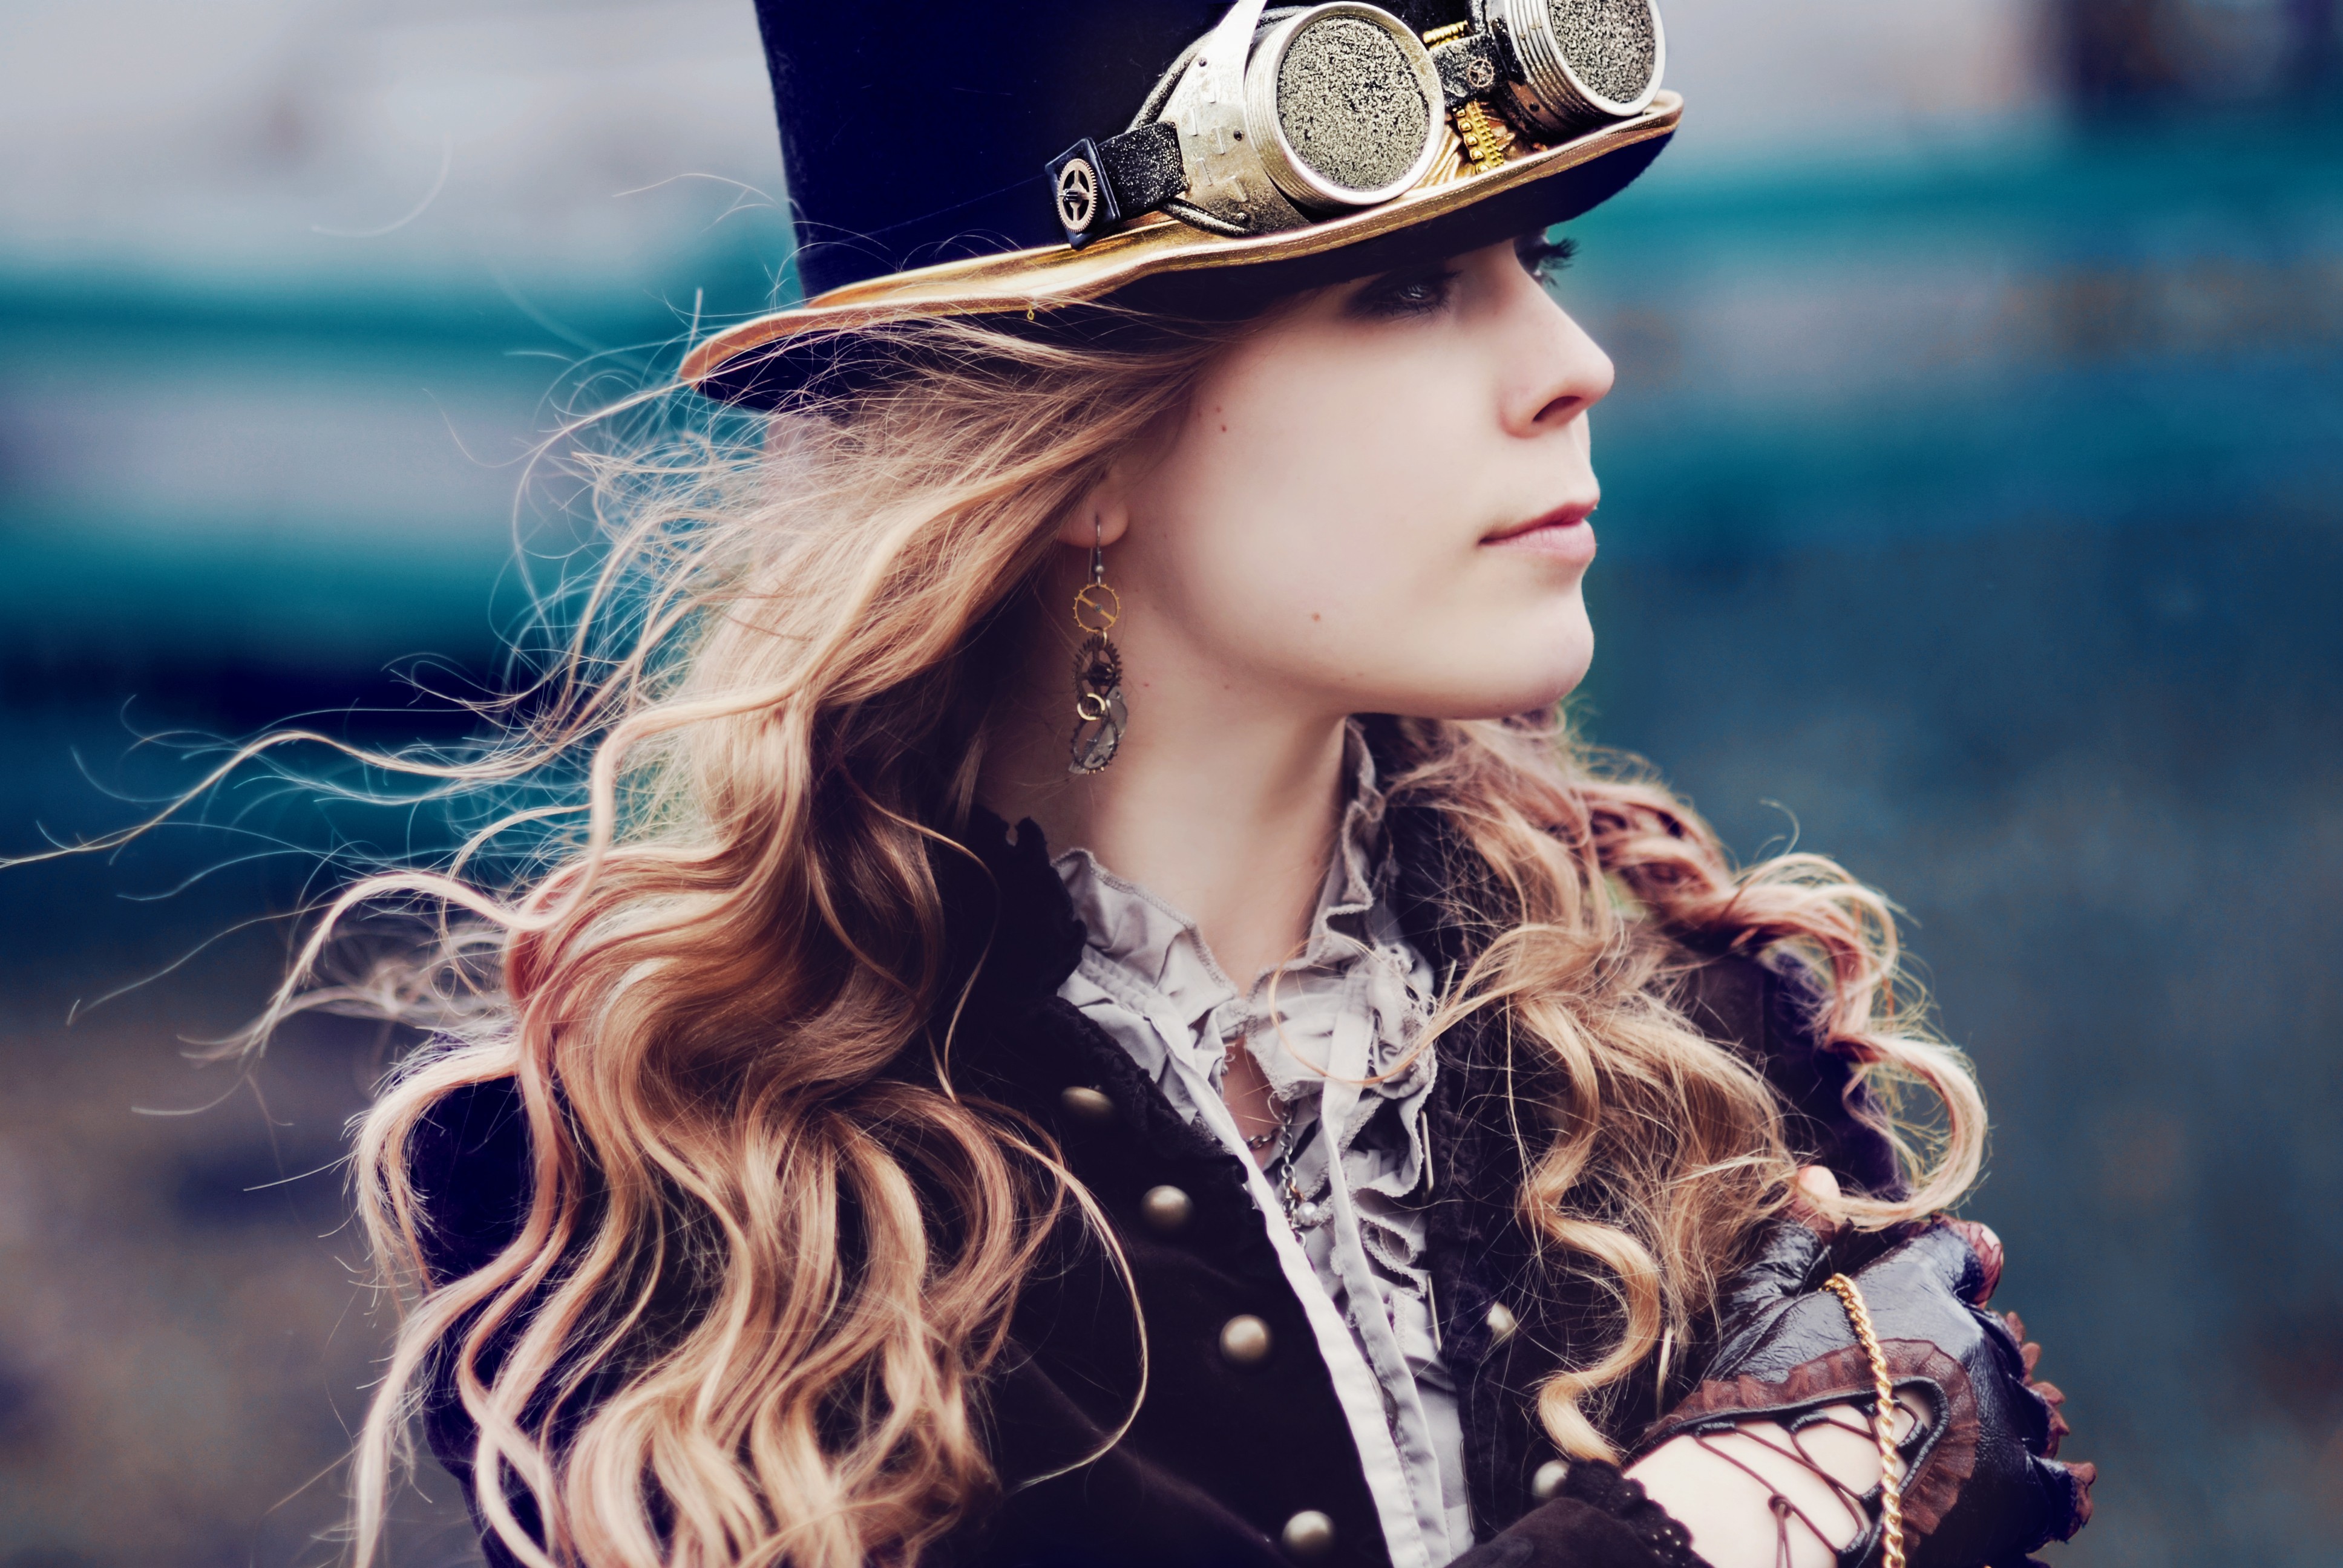 Стимпанк девушка. Викторианская эпоха стимпанк. Стимпанк гогглы и шляпа.